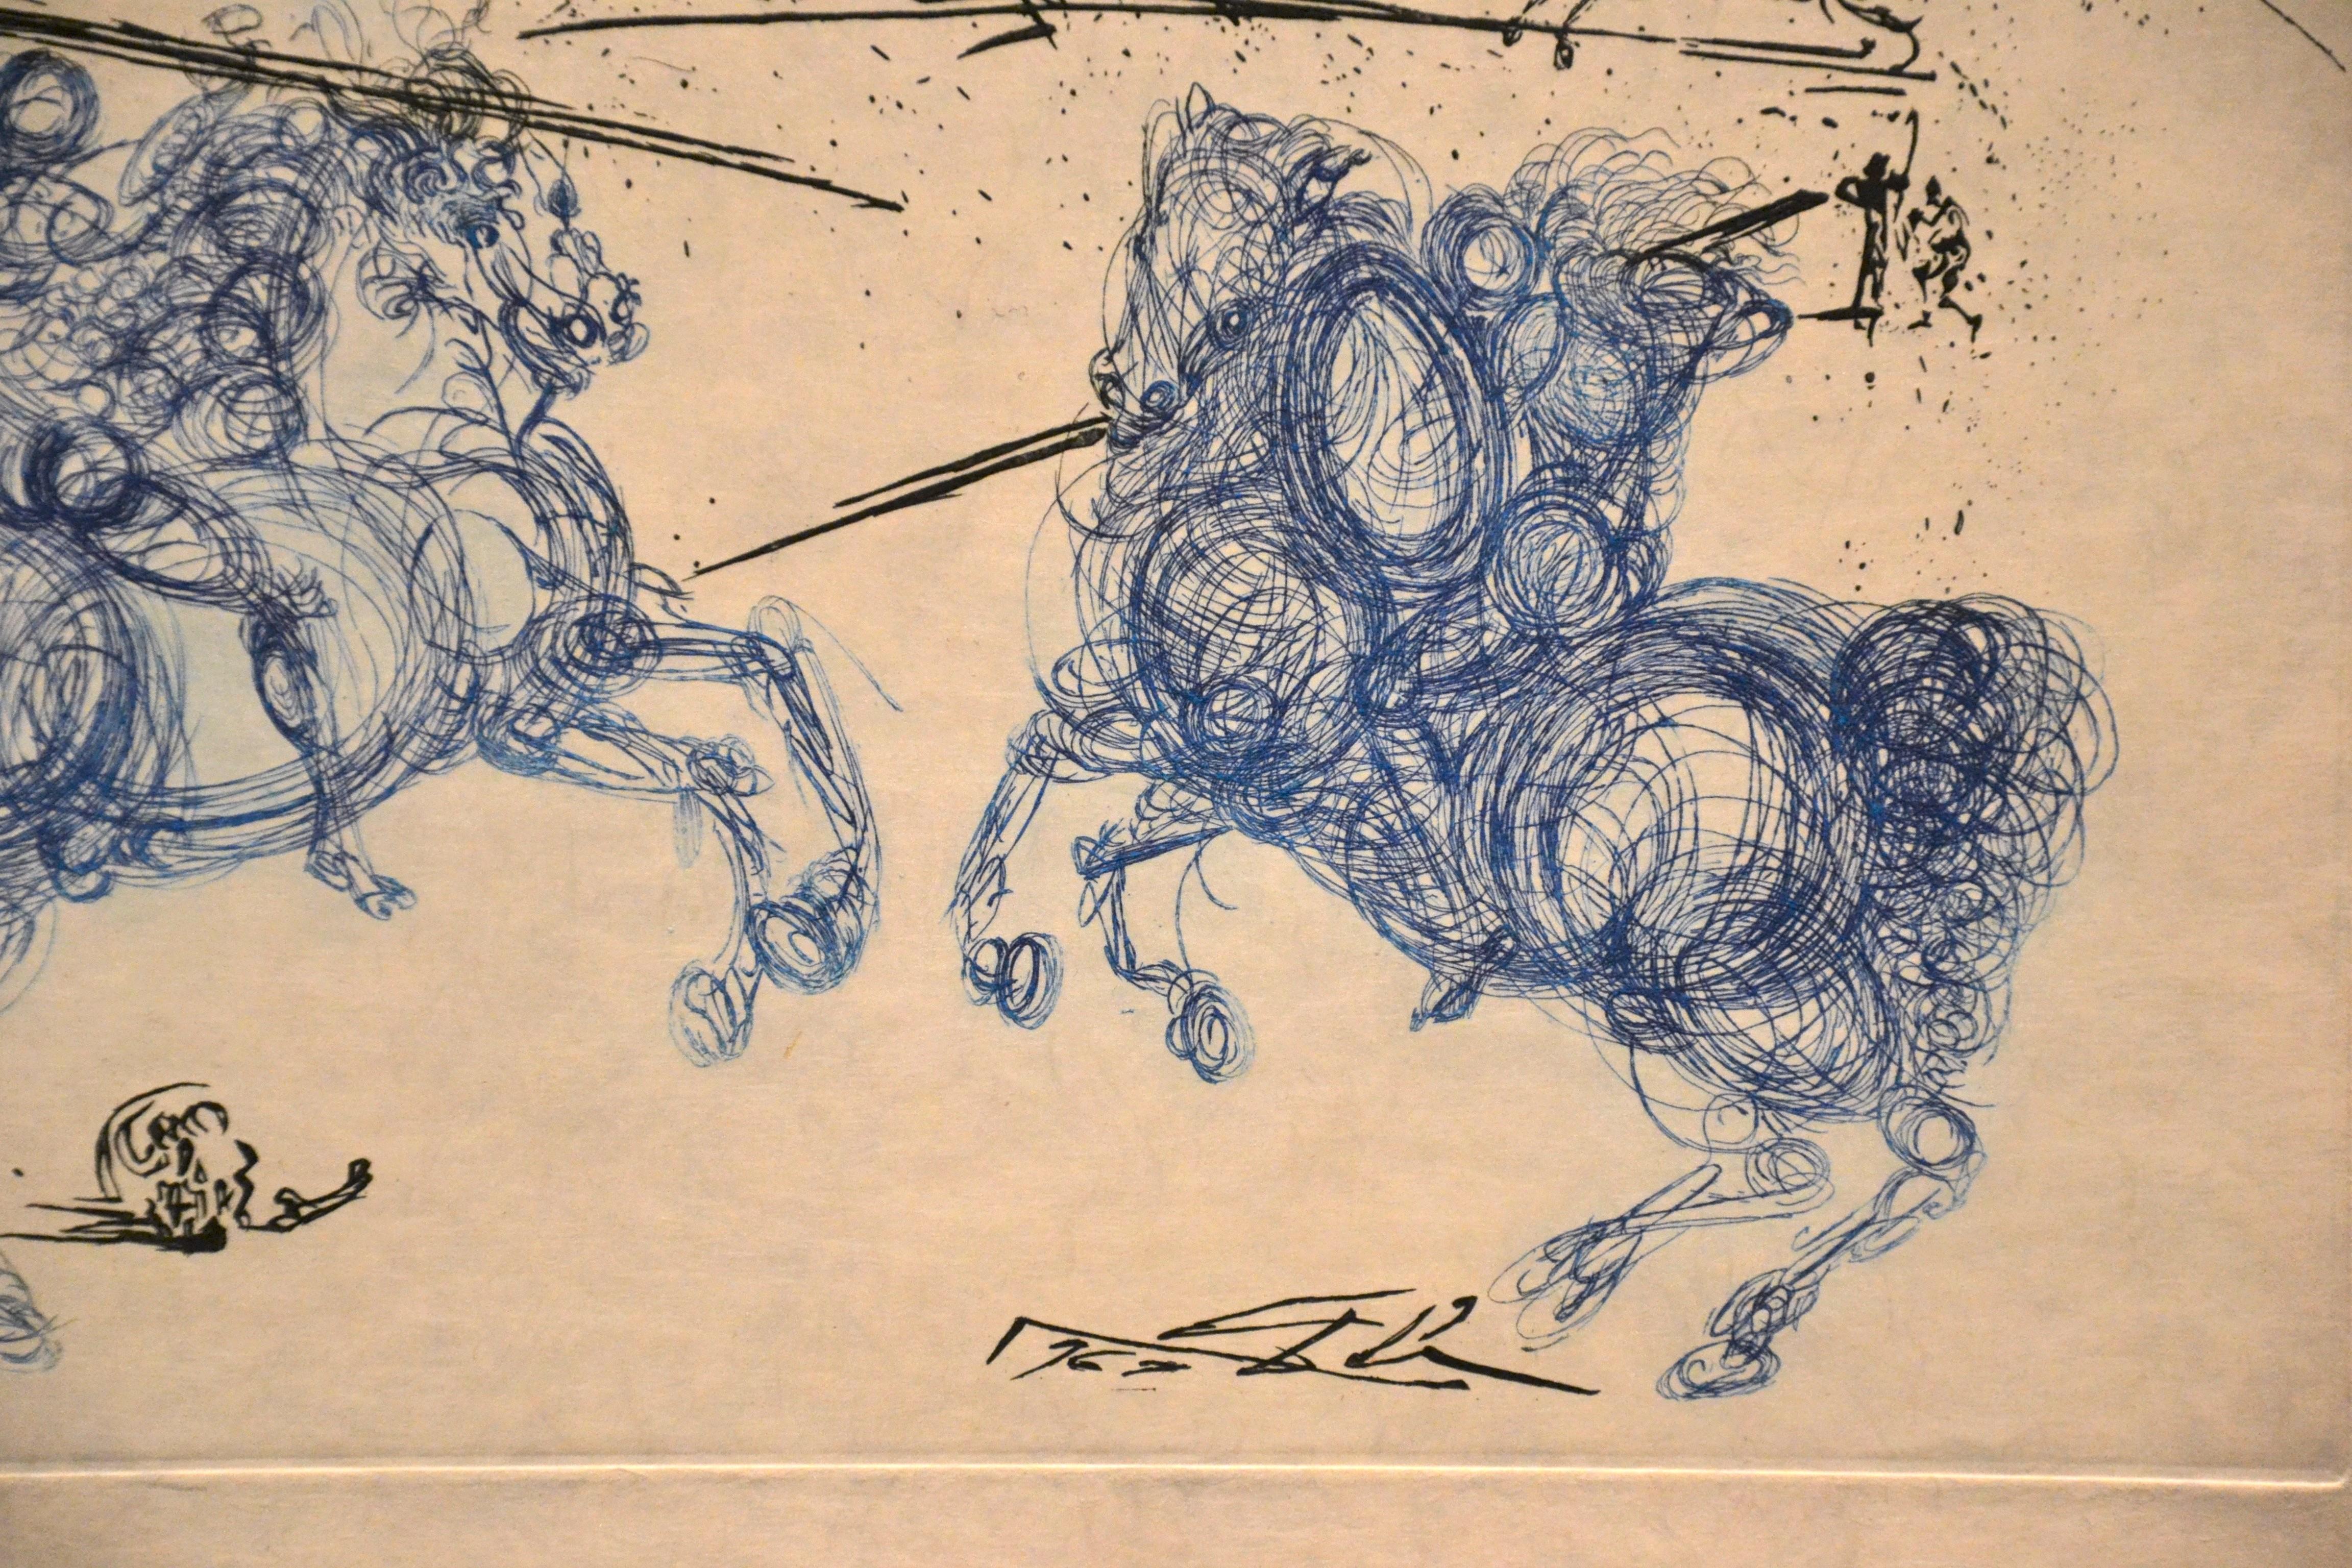 Les Cavaliers Bleus - Original Etching by S. Dali - 1969 - Surrealist Print by Salvador Dalí